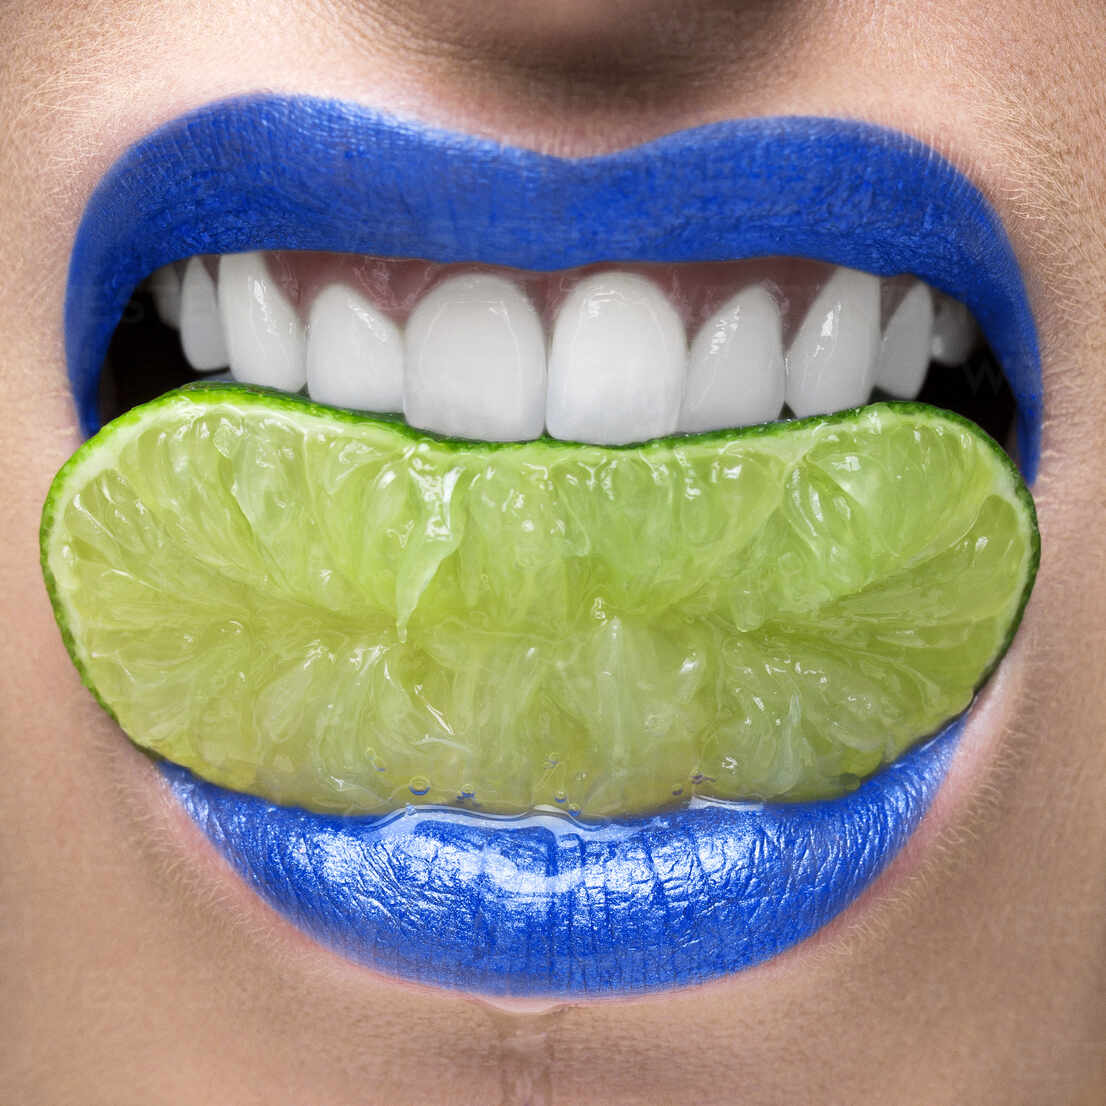 Blue Lips Biting On Lime Slice Isf23365 Steve Kraitt Westend61 1024 x 768 jpeg 154 kb. https www westend61 de en imageview isf23365 blue lips biting on lime slice